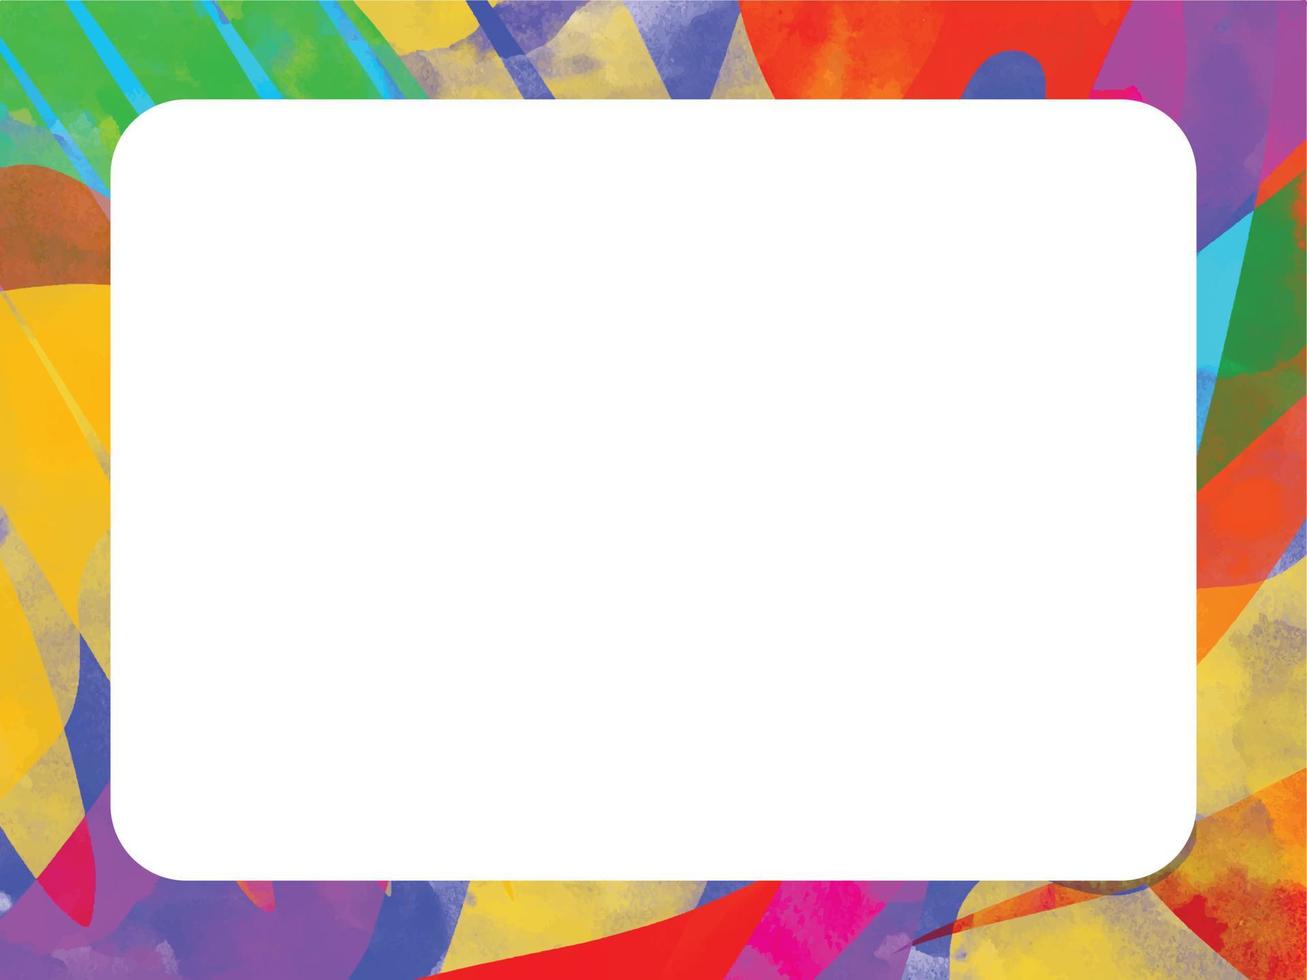 quadro de fundo de traçado de pincel sujo arco-íris artístico colorido abstrato com espaço de cópia em branco branco isolado. modelo para post de mídia social, pôster, banner, brochura e outros. vetor